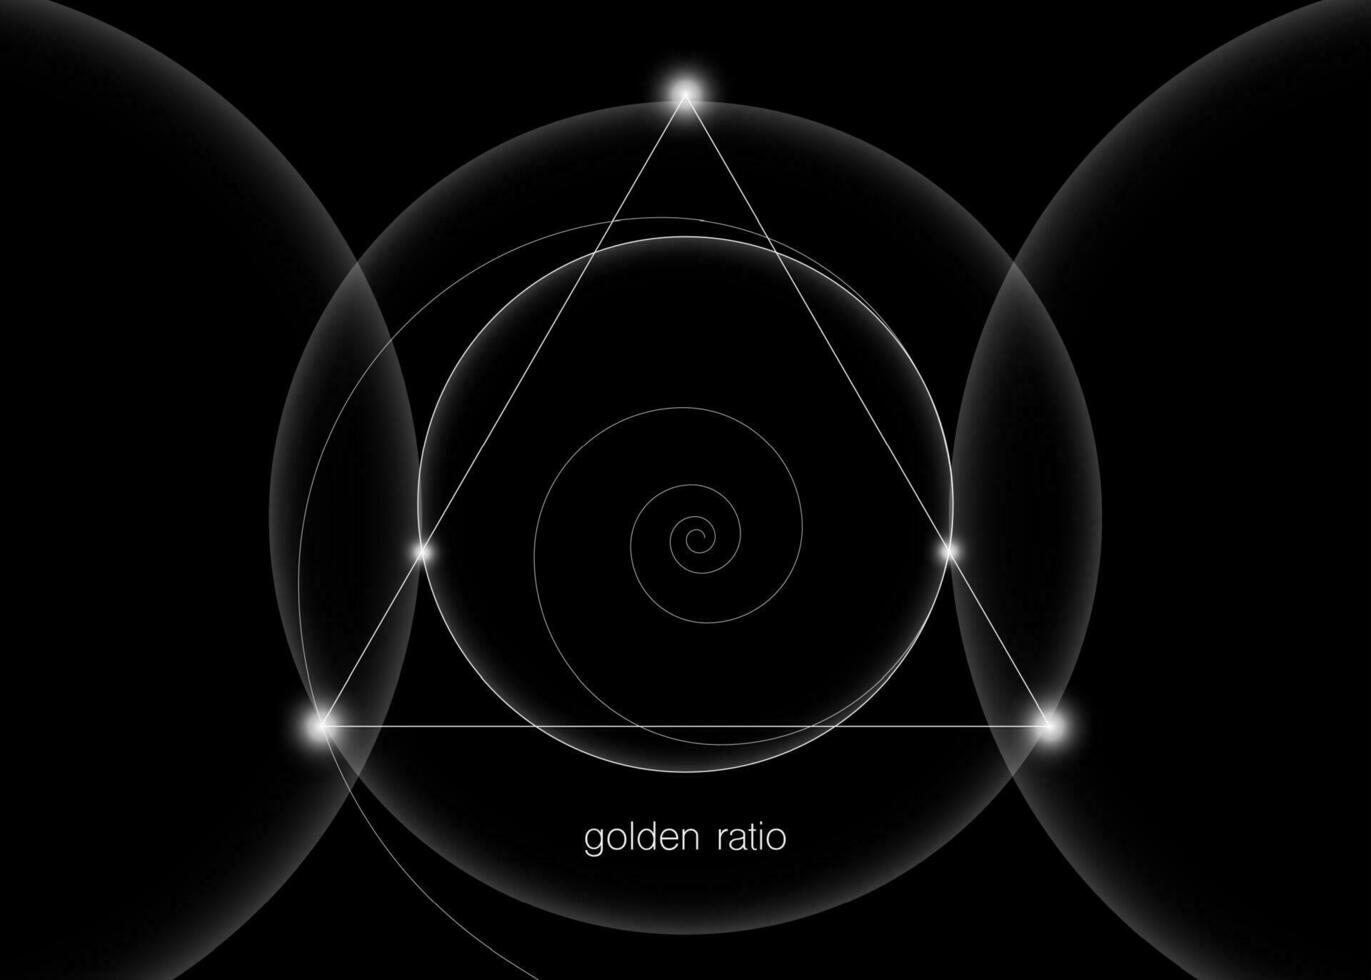 förregling cirklar, trianglar och spiraler hipster helig geometri illustration med gyllene förhållande, Fibonacci spiral. vit linje vektor isolerat på svart bakgrund.